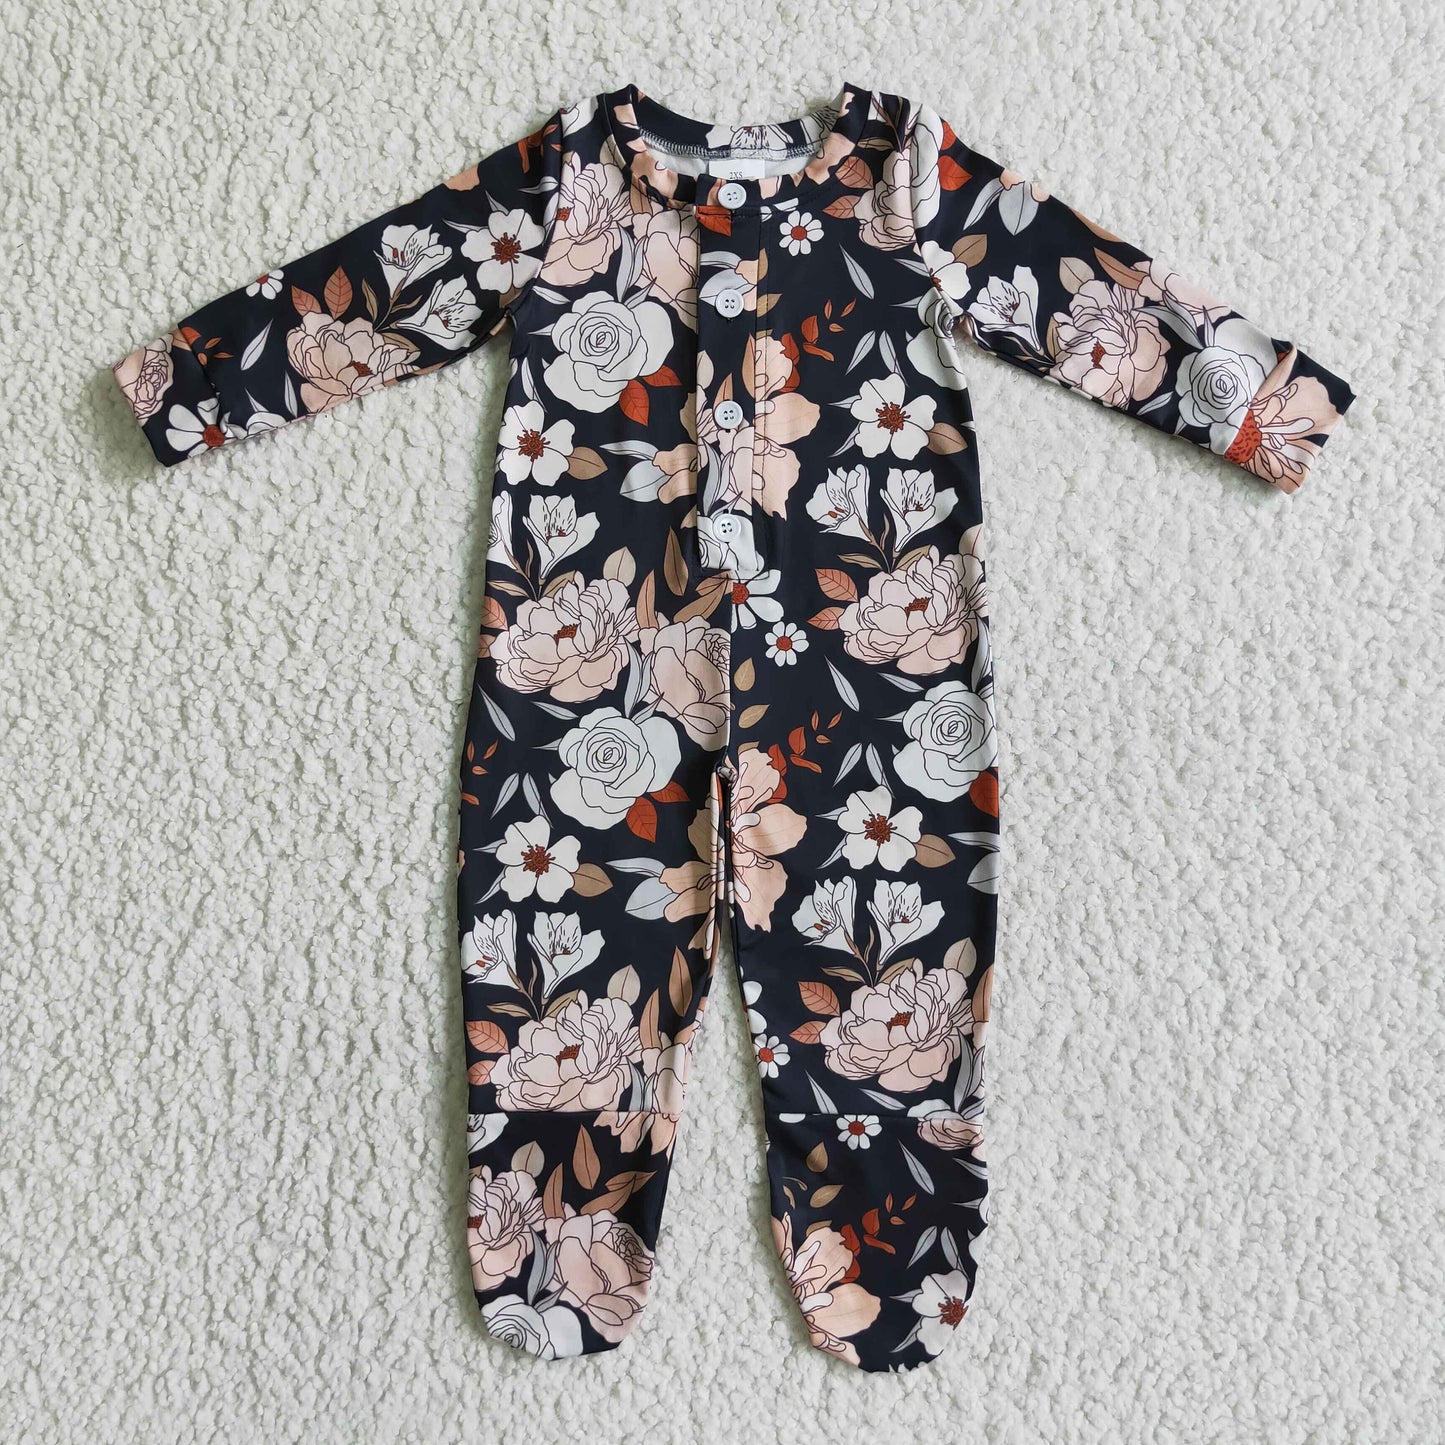 LR0116 infants baby long sleeve zipper bodysuit with flowers pattern